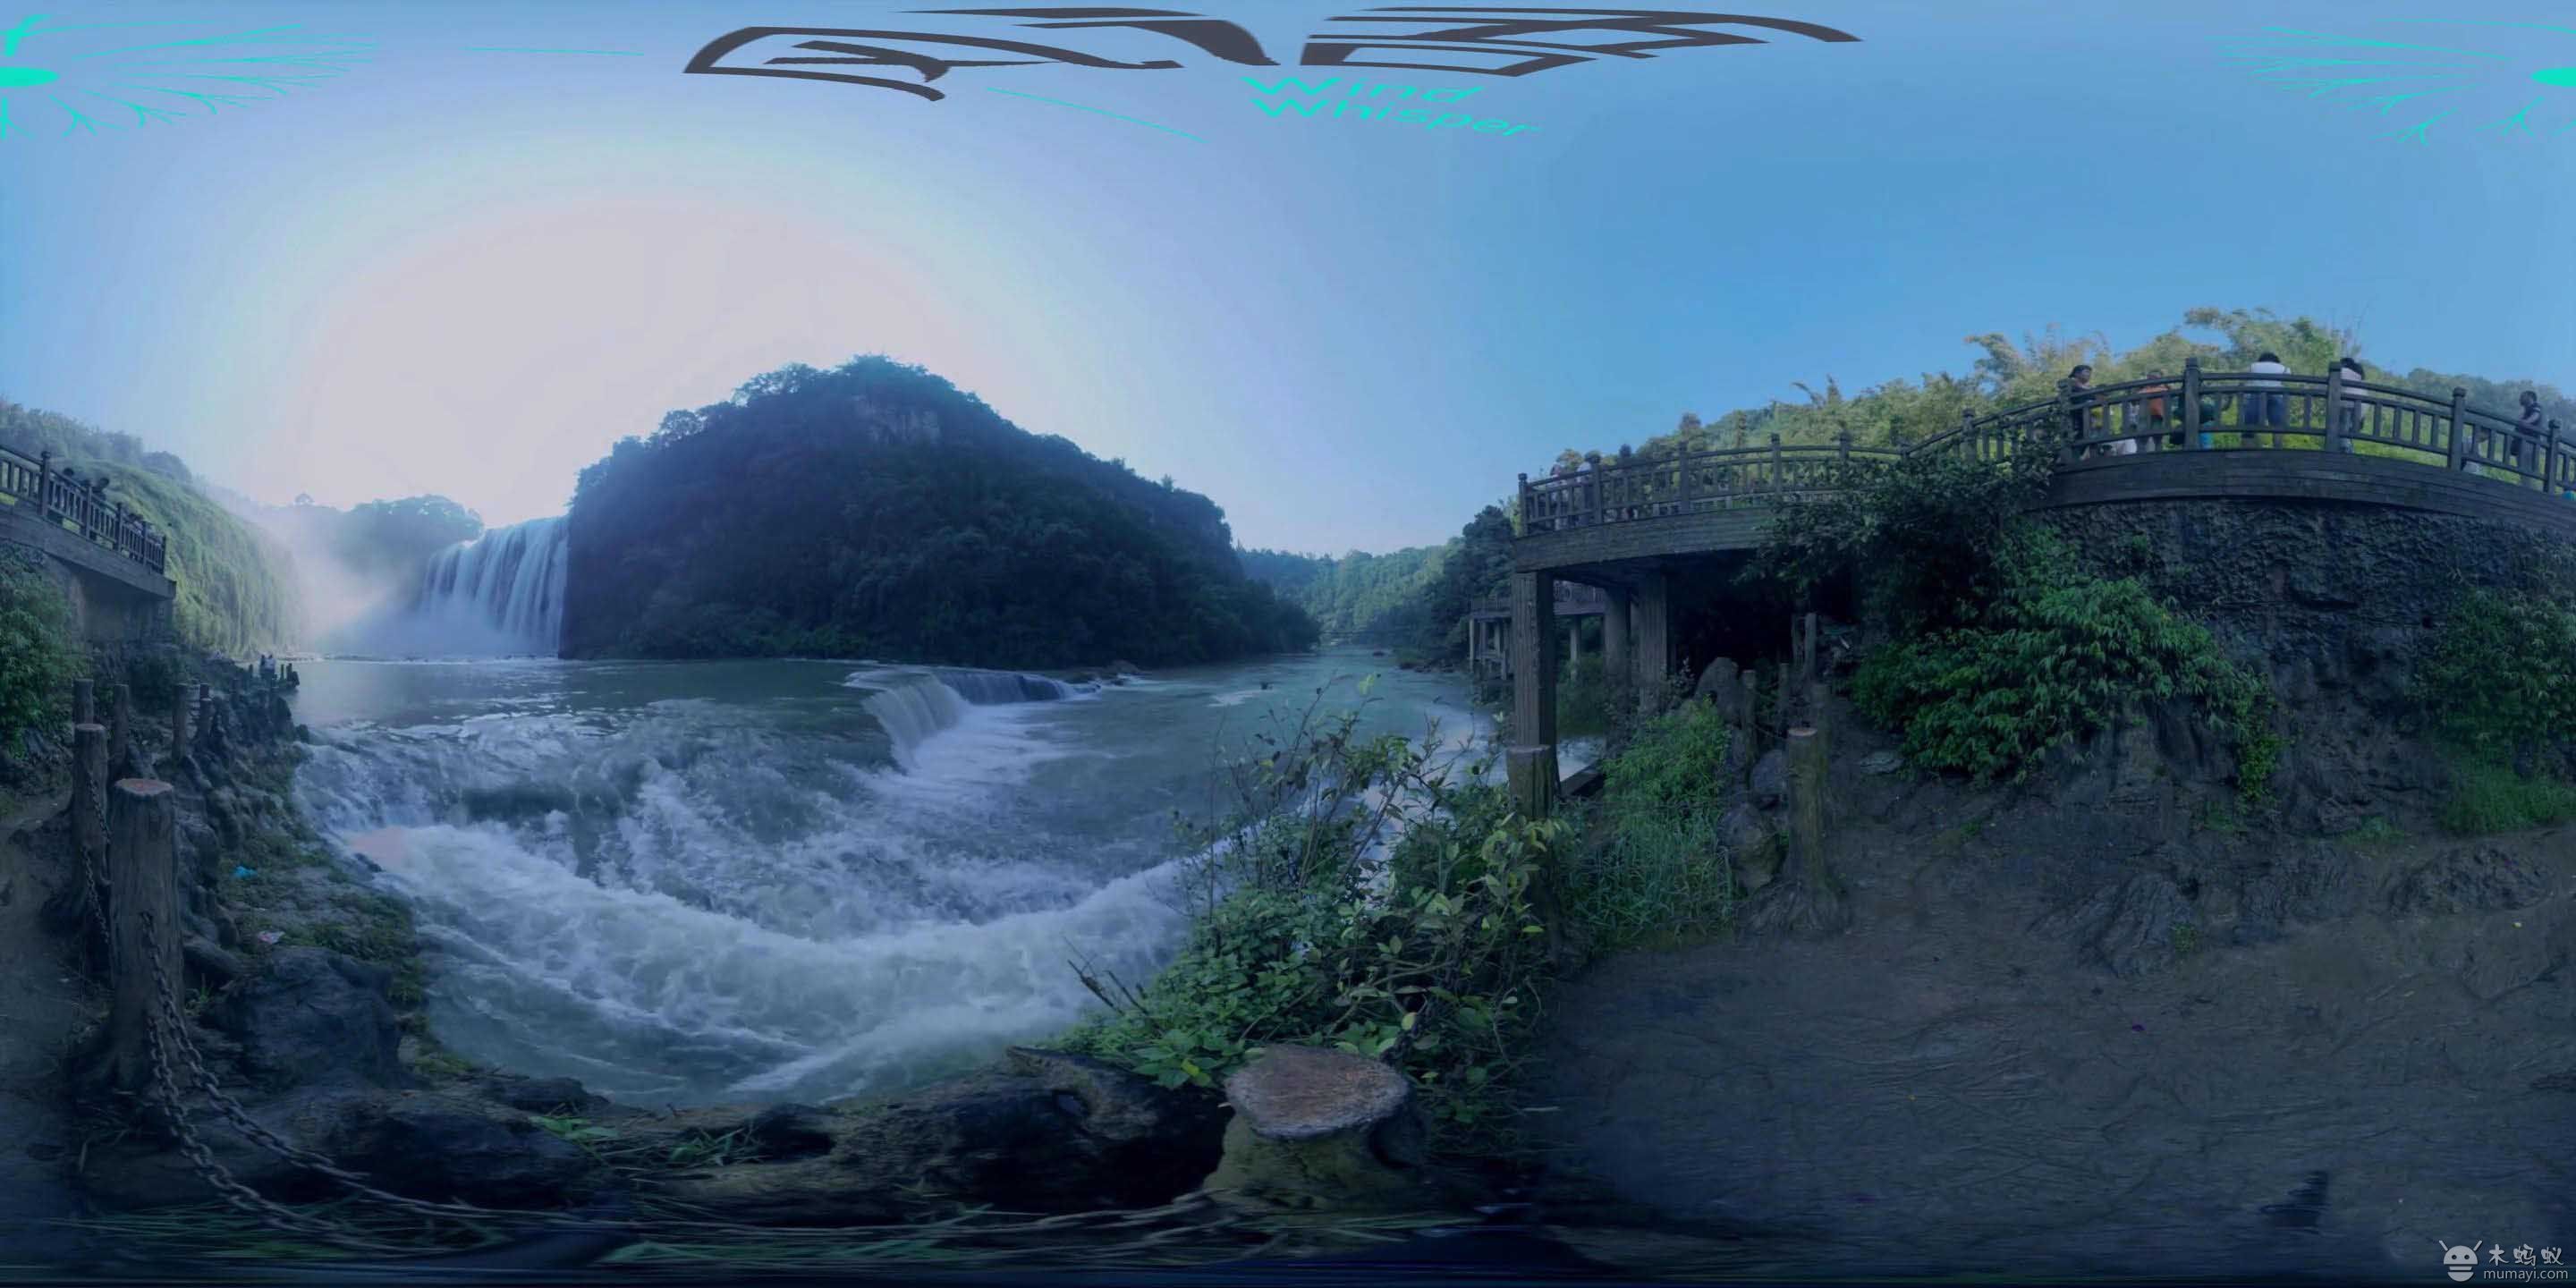 虚拟现实视频:全景航拍黄果树瀑布